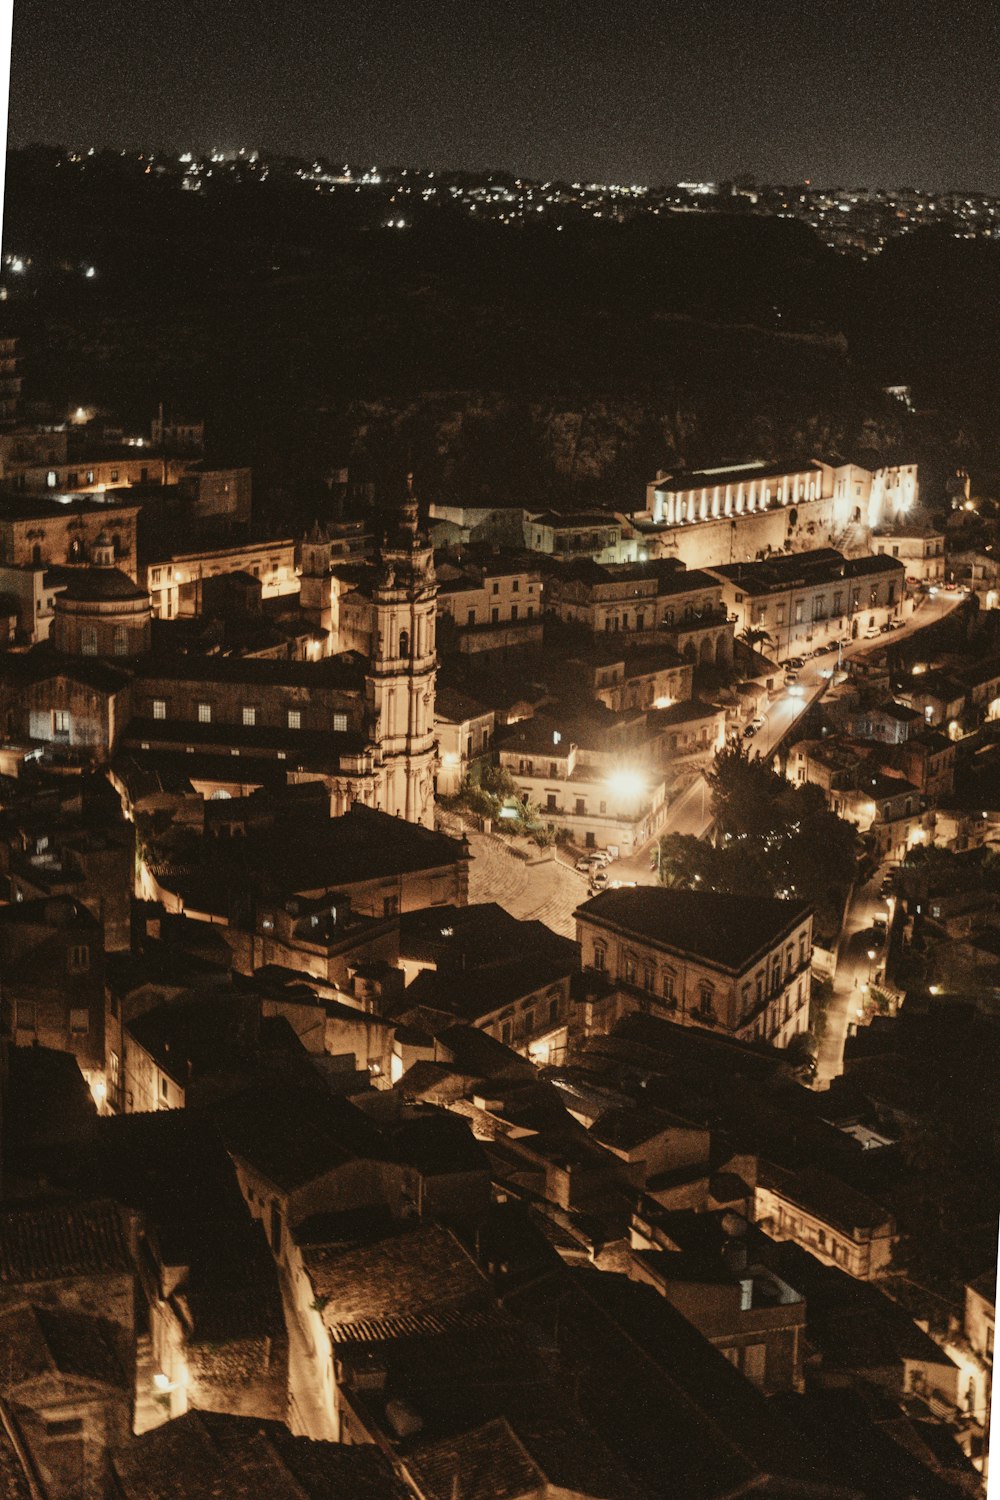 Ein Blick auf eine Stadt bei Nacht aus einem hohen Blickwinkel